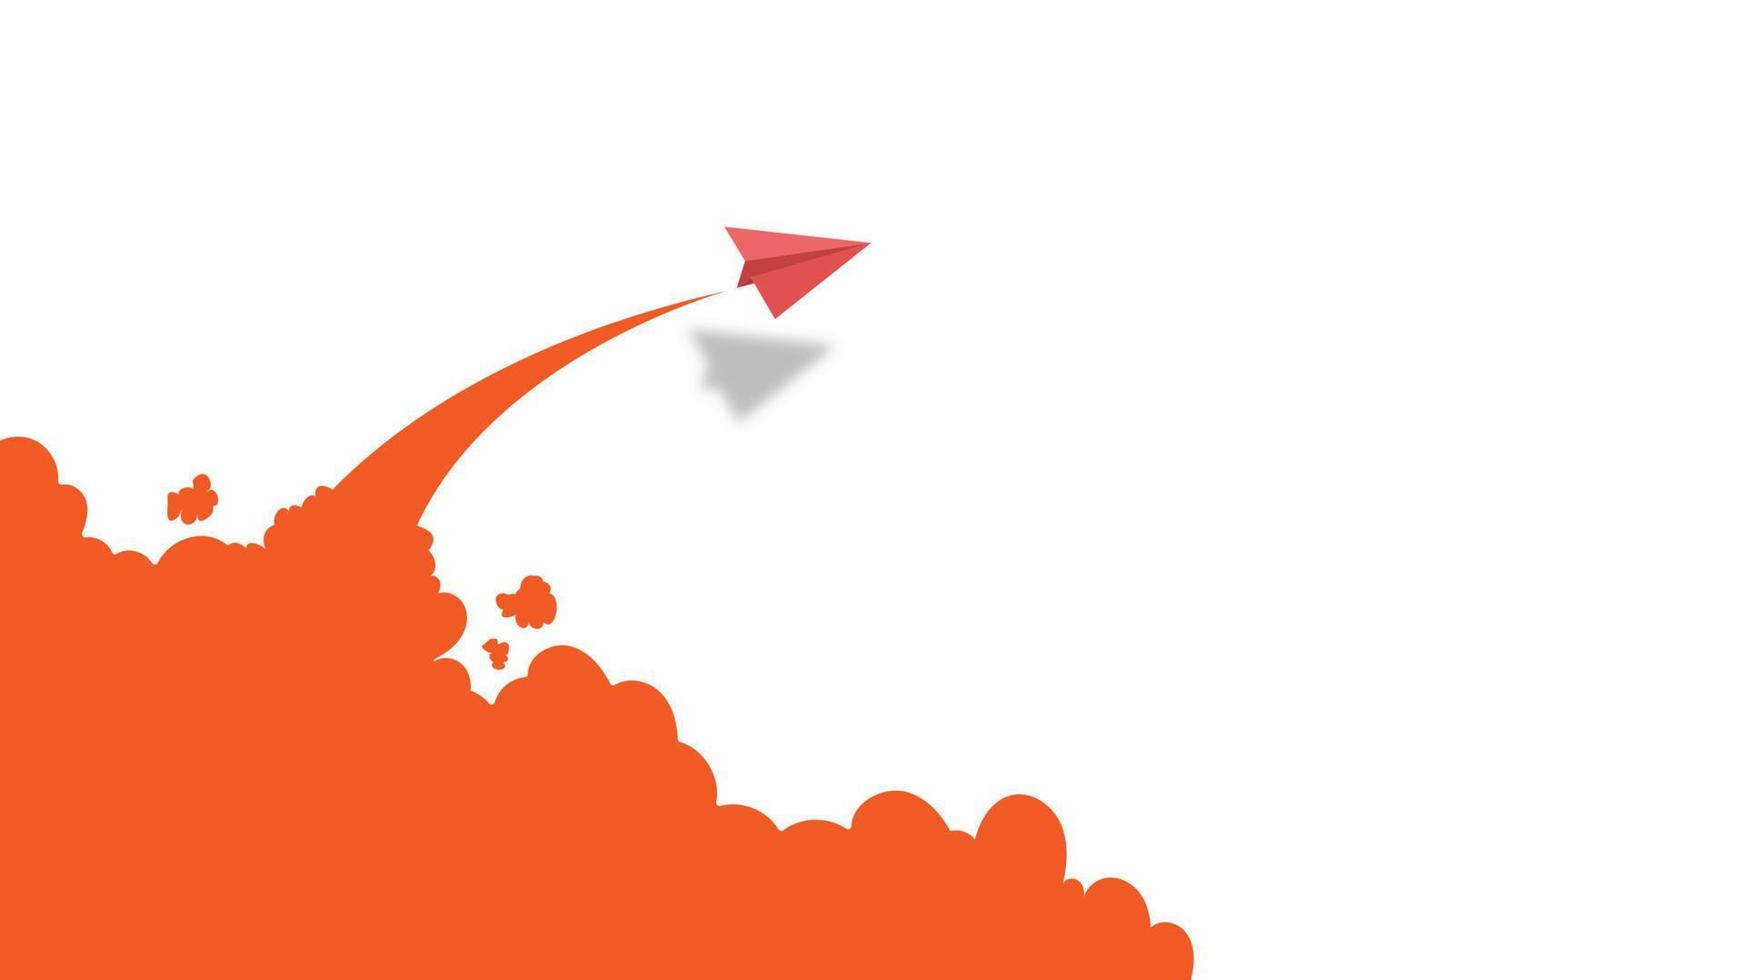 vitt och rött papper flygplan ledare flyger tillsammans på blå himmel på moln bakgrund. kreativa koncept idé av affärsframgång och ledarskap i papper hantverk konst stil design .vector illustration vektor